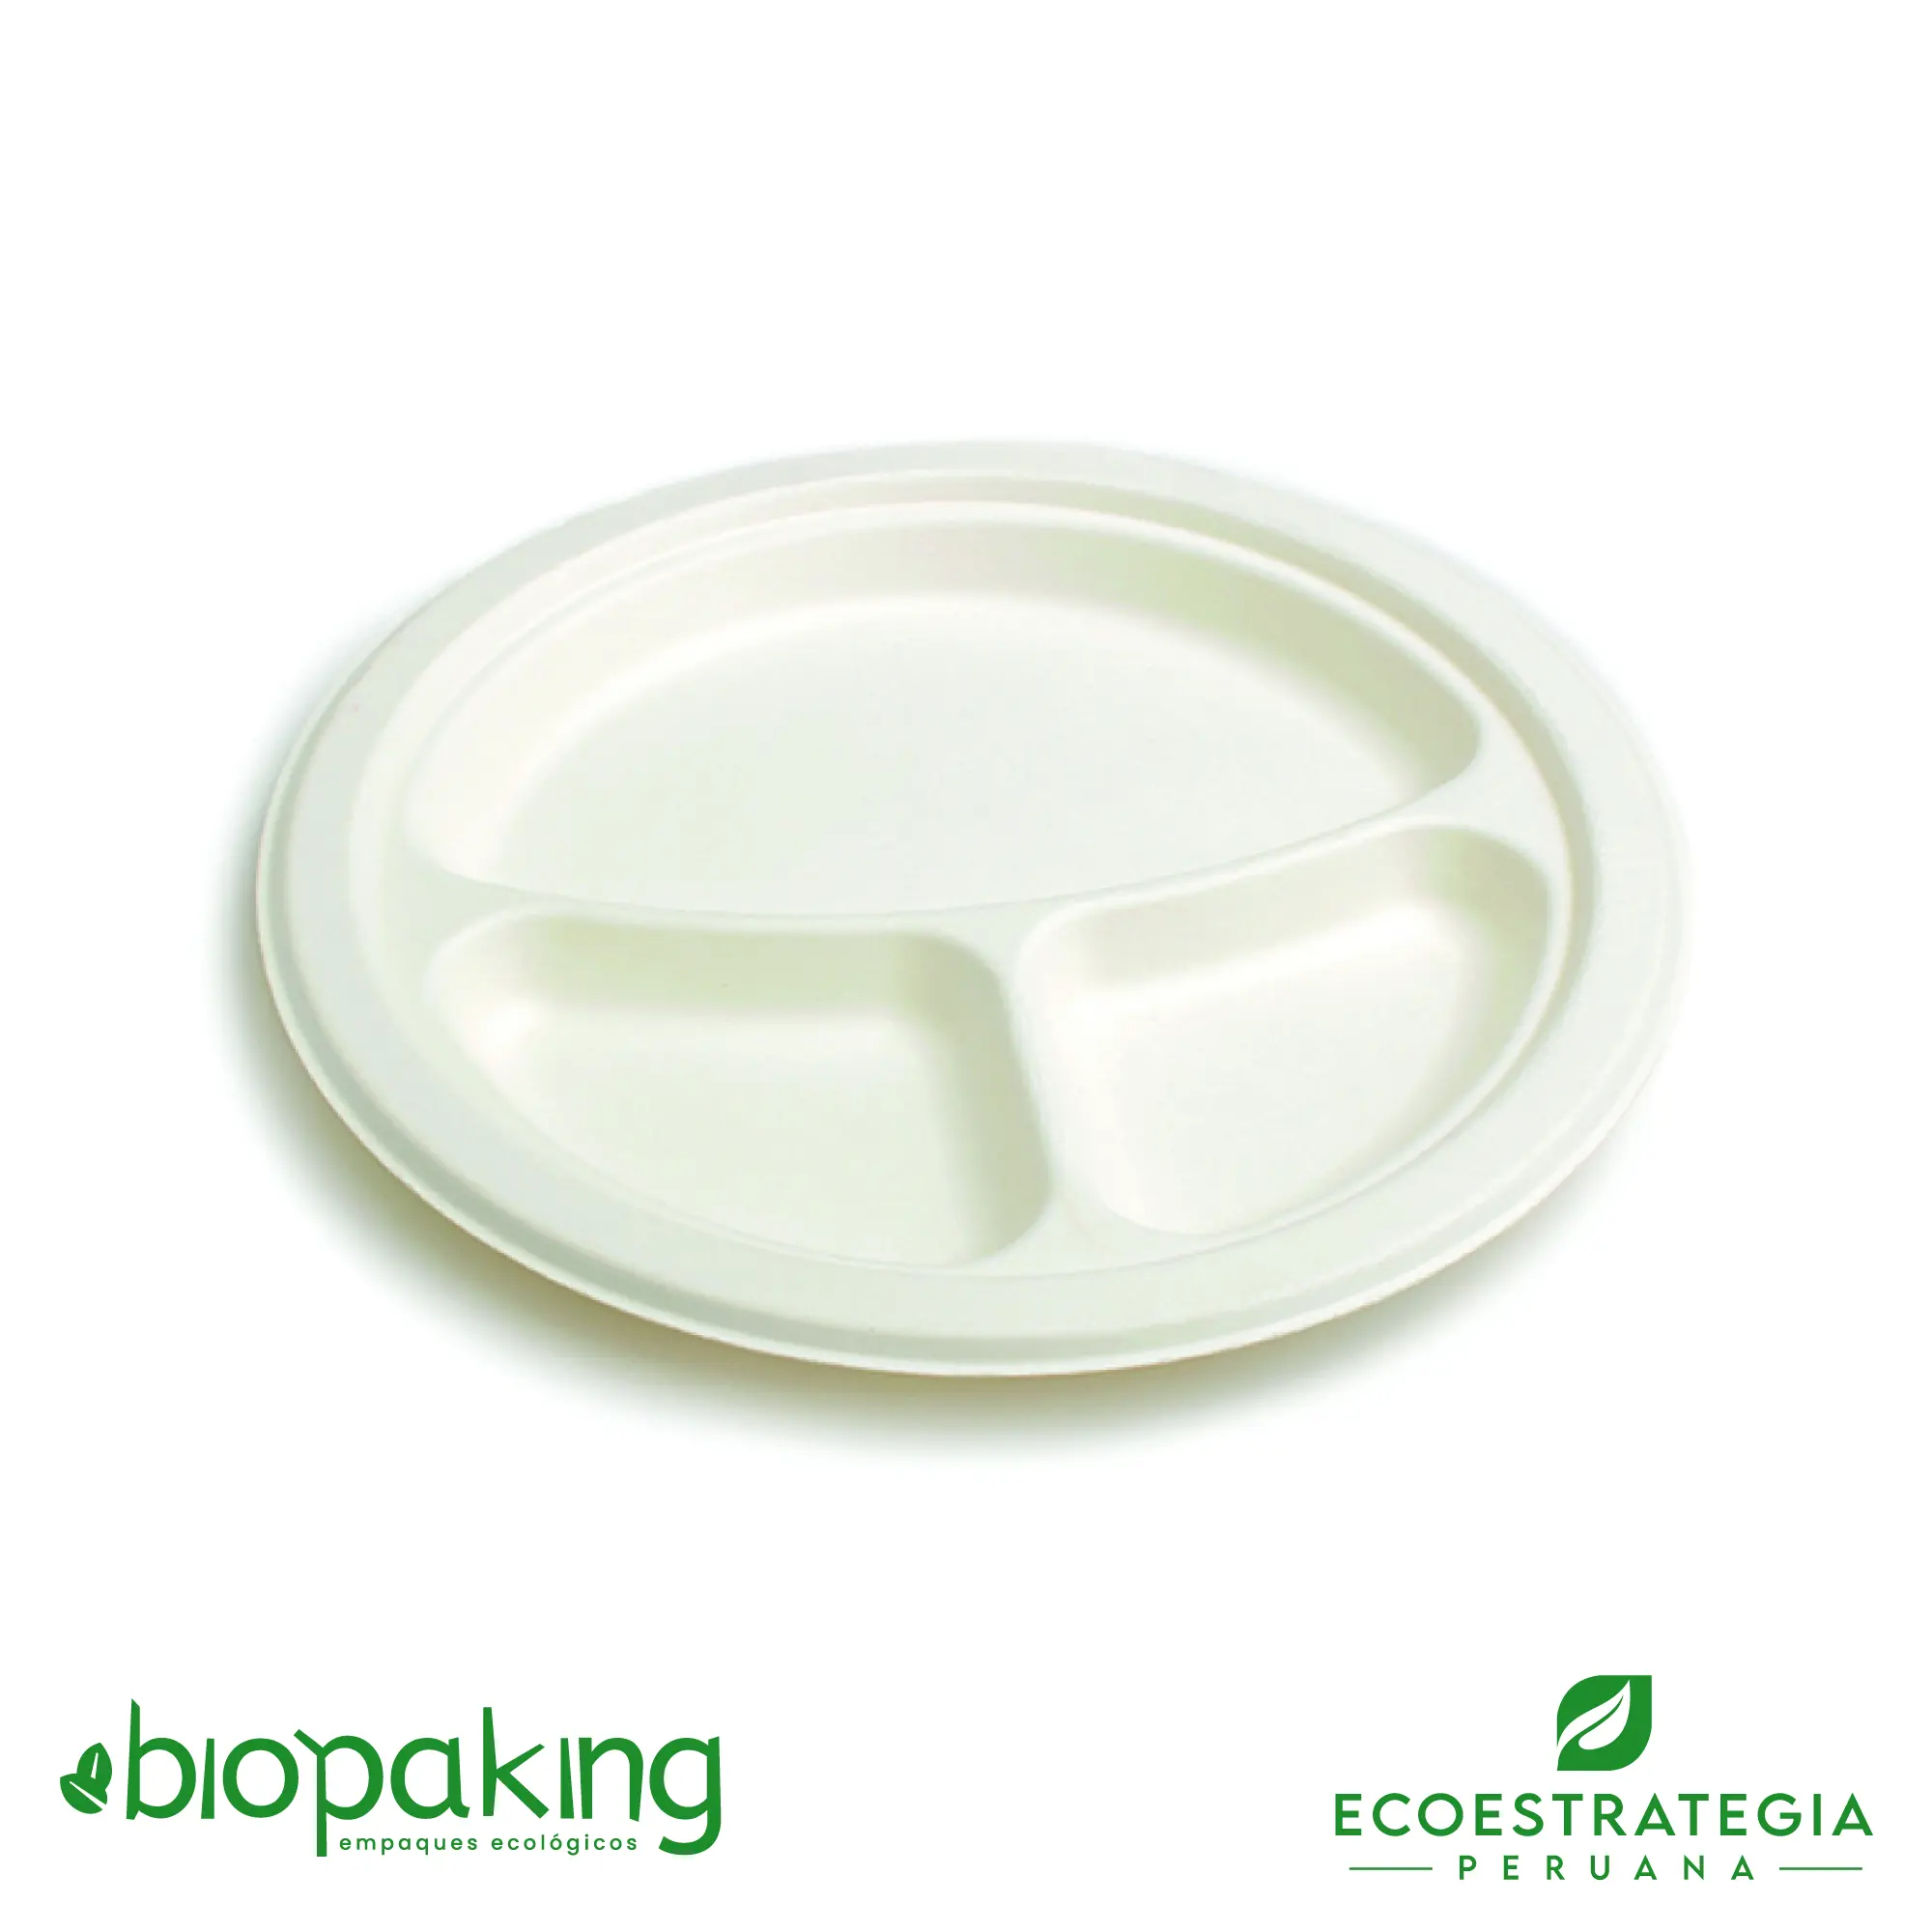 Este plato de 26 cm con division es un producto de materiales biodegradables, hecho a base de fibra de caña de azúcar. Cotiza envases, empaques y tapers bio